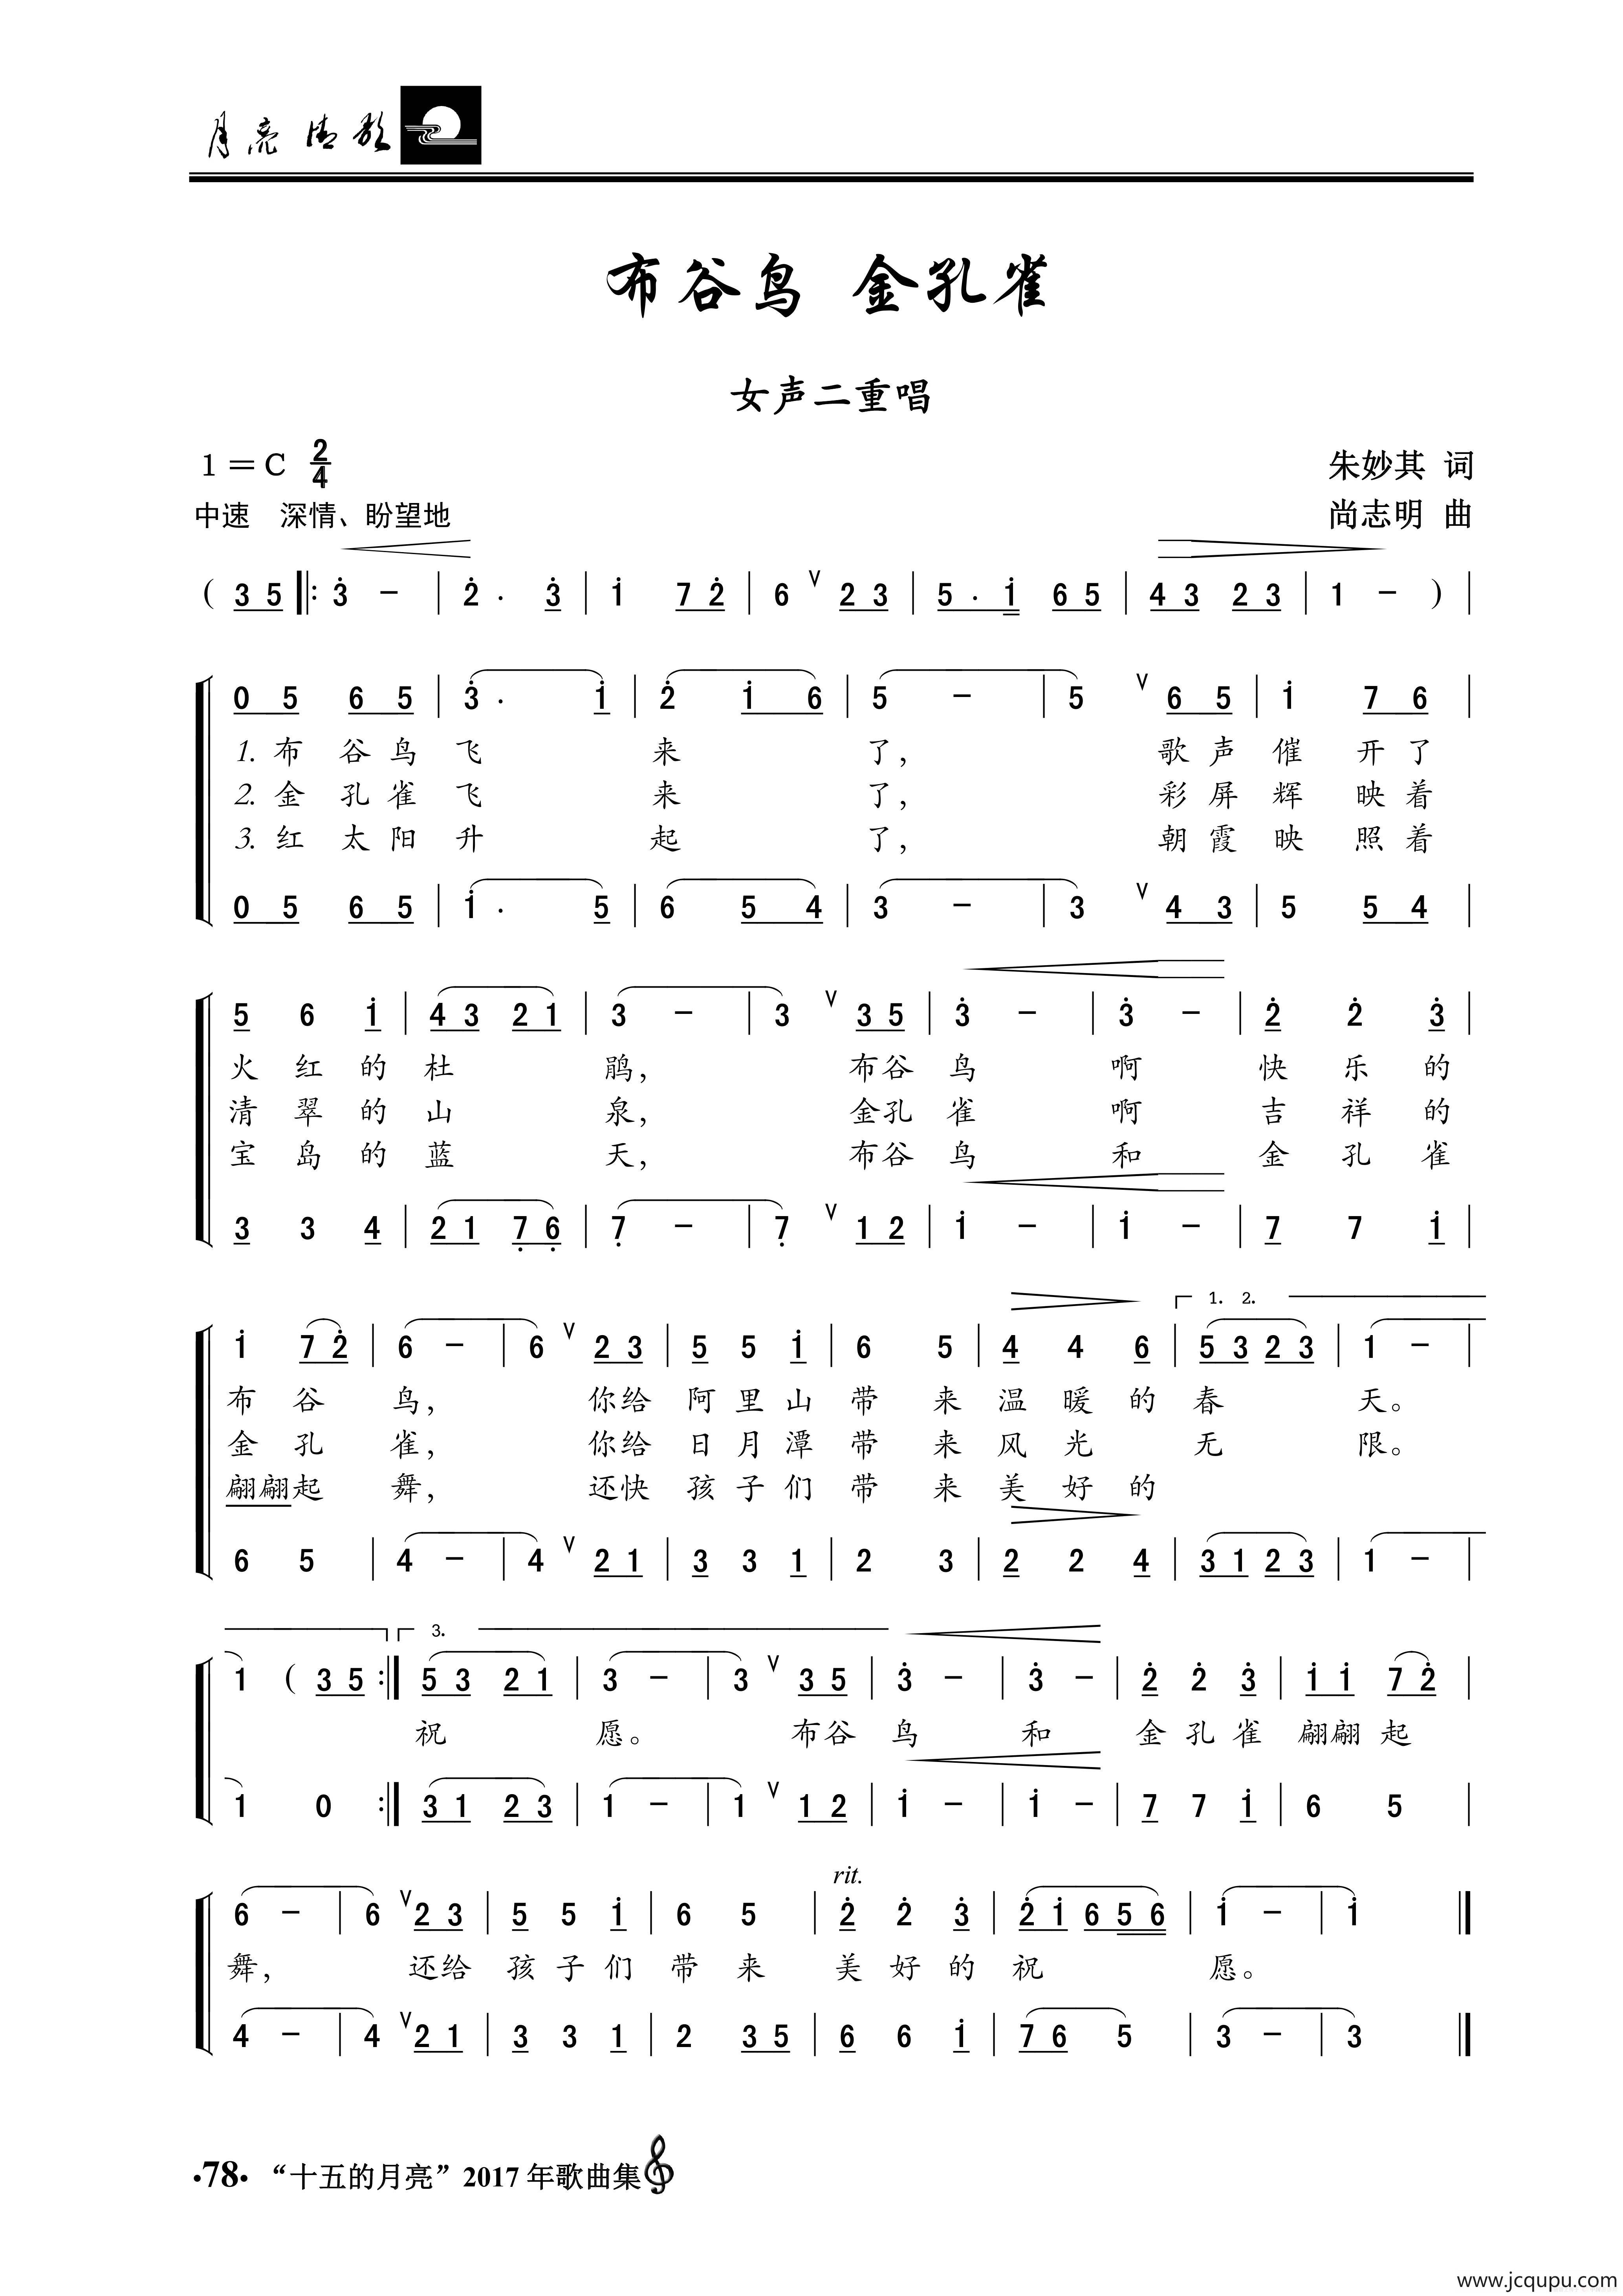 布谷鸟(四合一吉他谱 木棉道琴行)吉他谱(PDF谱,四合一吉他谱,木棉道琴行,弹唱)_安子与九妹(Anzi&Jiumei)